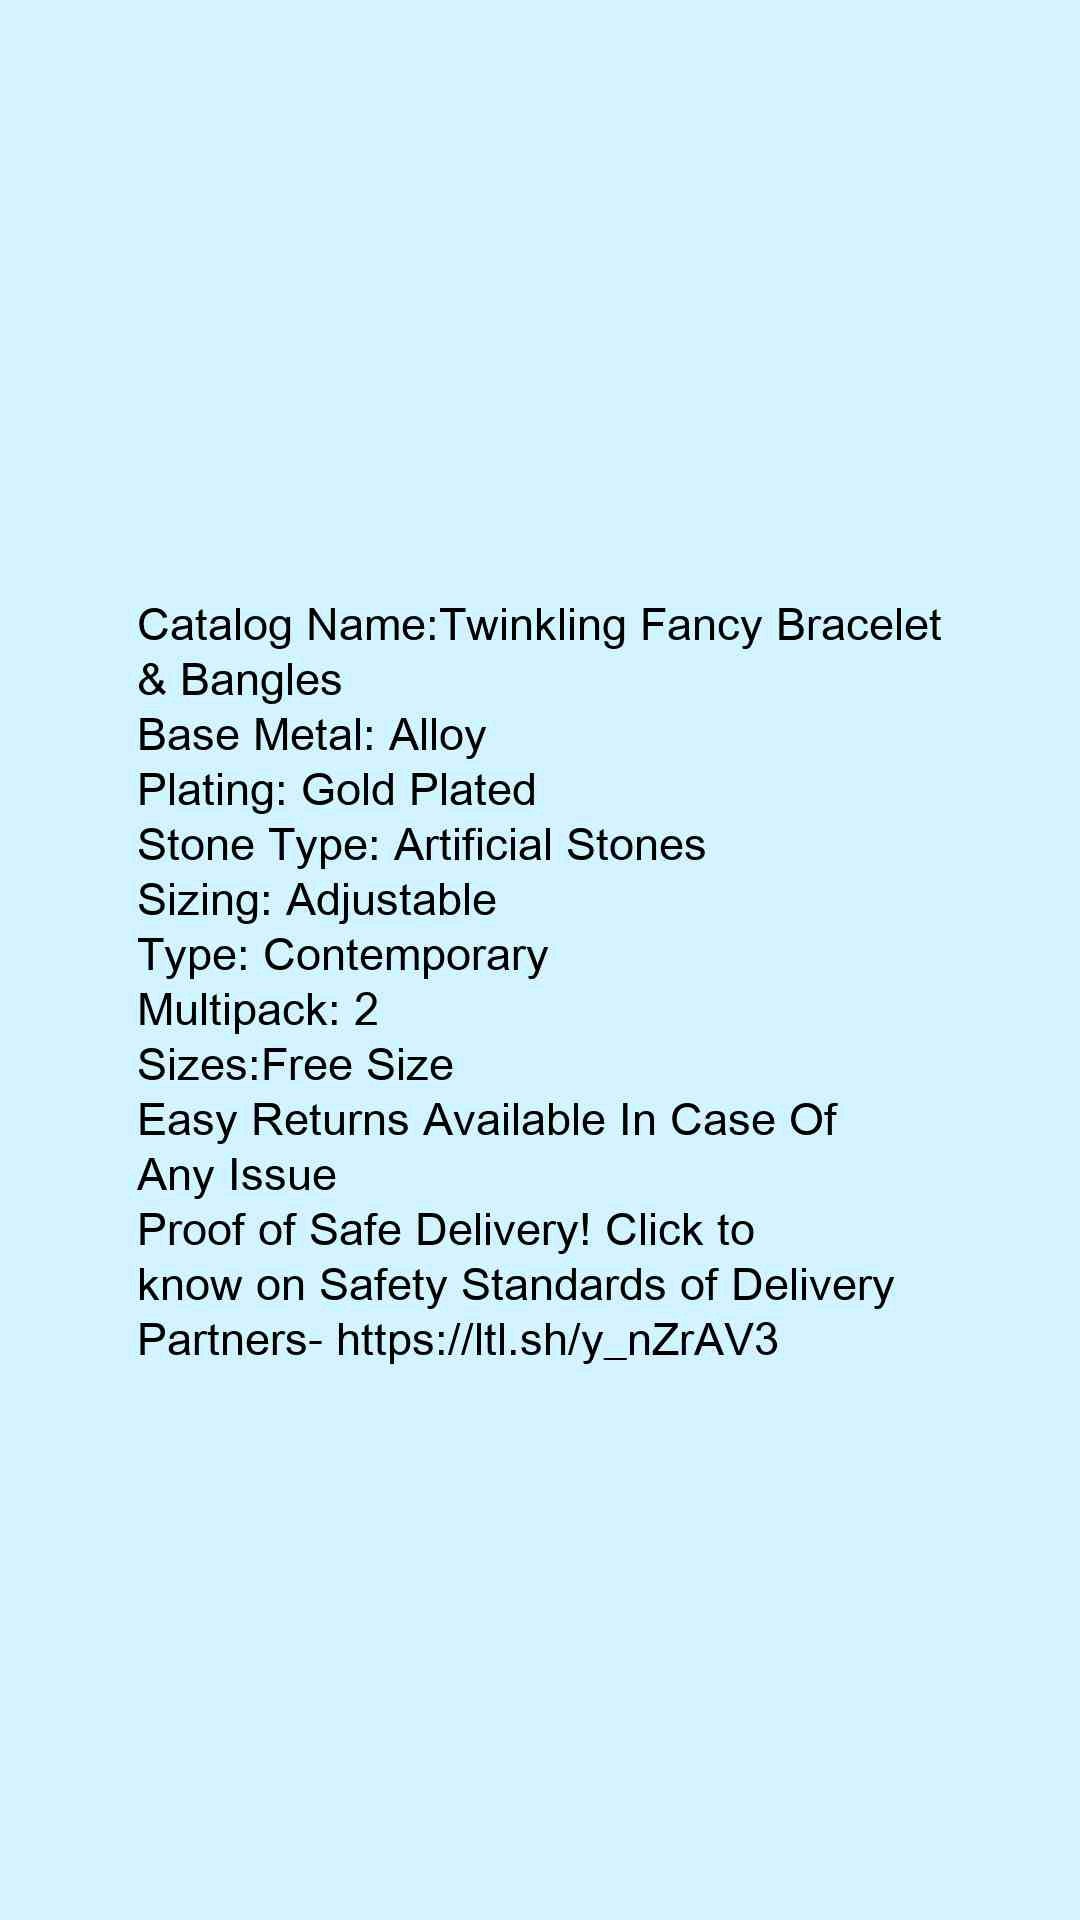 Twinkling Fancy Bracelet & Bangles - Faritha